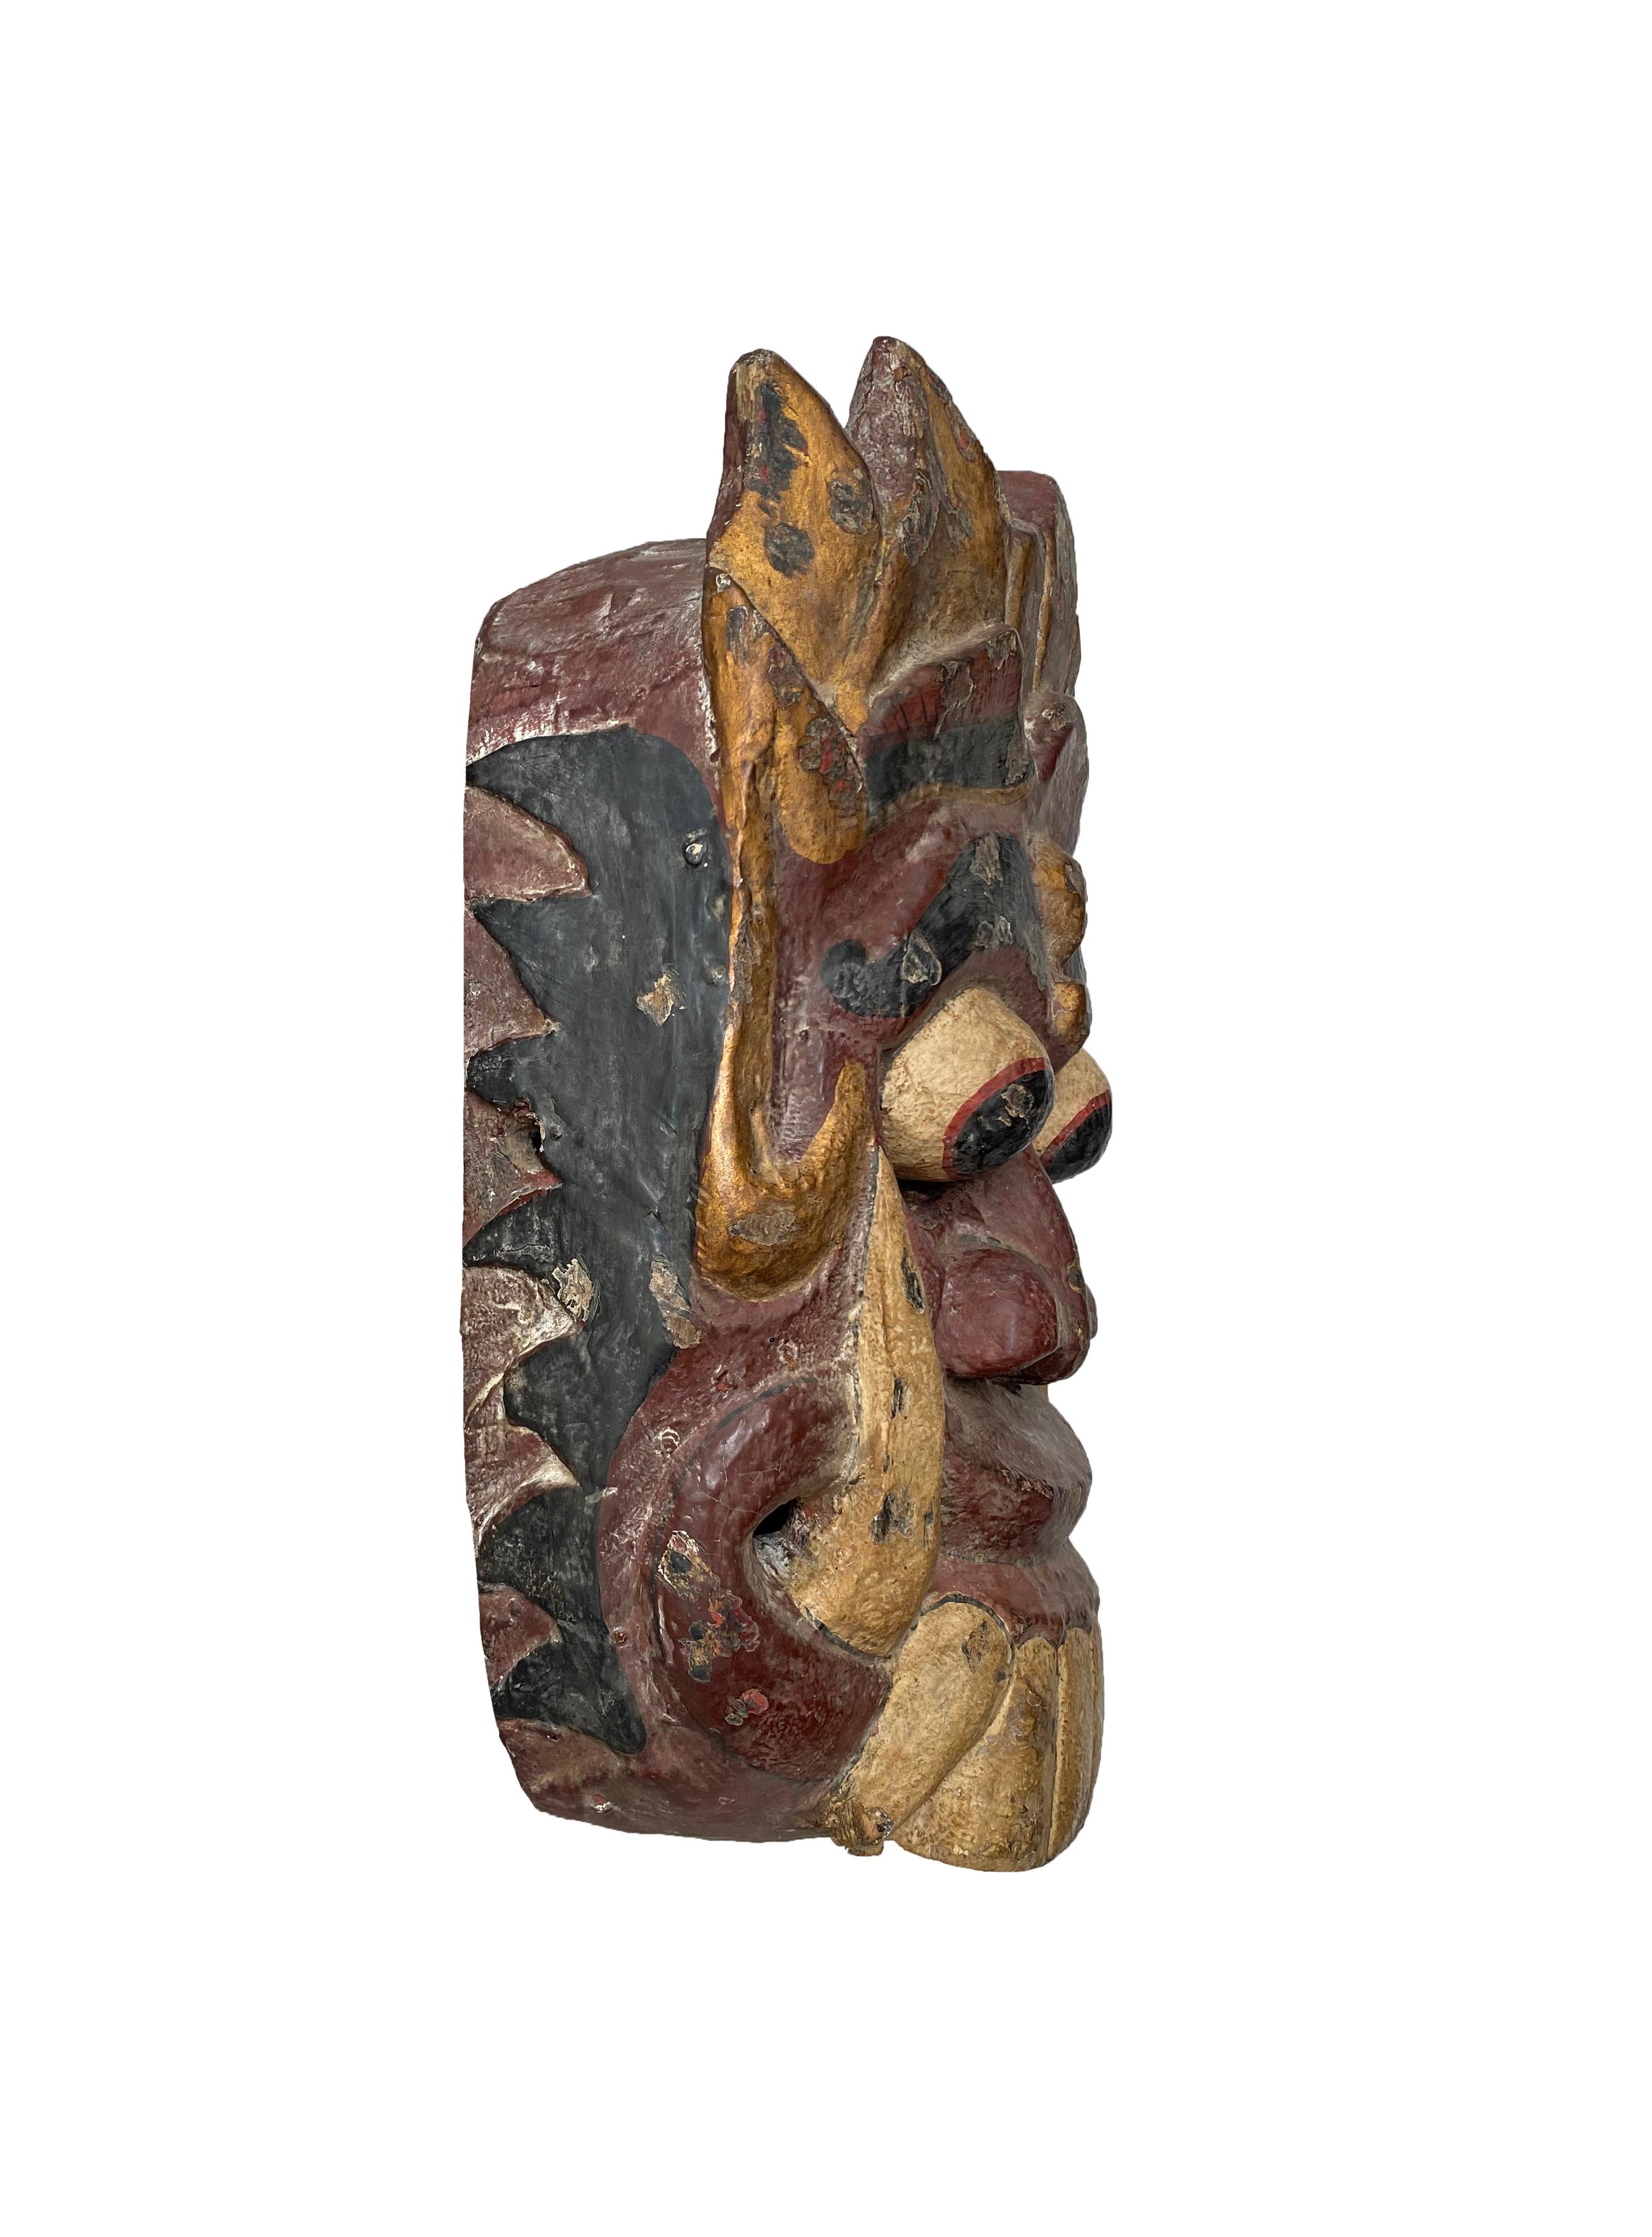 Diese handgeschnitzte Maske stammt von der Insel Bali und stellt Rangda dar, die Dämonenkönigin der balinesischen Hindu-Mythologie. Diese Maske wurde bei Zeremonien und/oder Tanzaufführungen verwendet. Sie zeigt eine Mischung aus Burgunder, Gold und